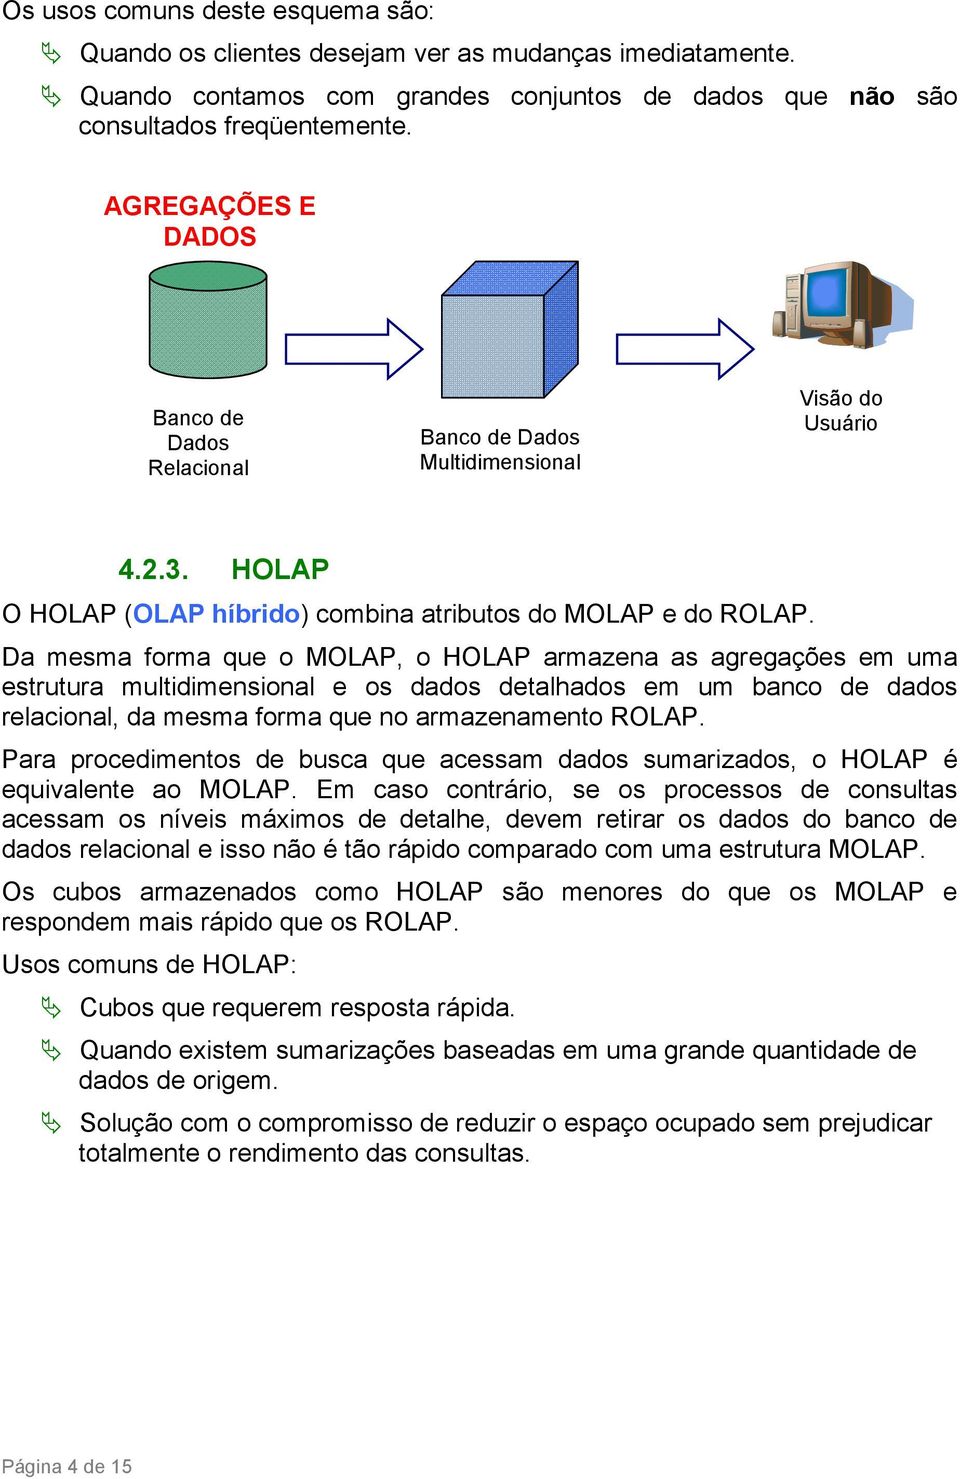 Da mesma forma que o MOLAP, o HOLAP armazena as agregações em uma estrutura multidimensional e os dados detalhados em um banco de dados relacional, da mesma forma que no armazenamento ROLAP.